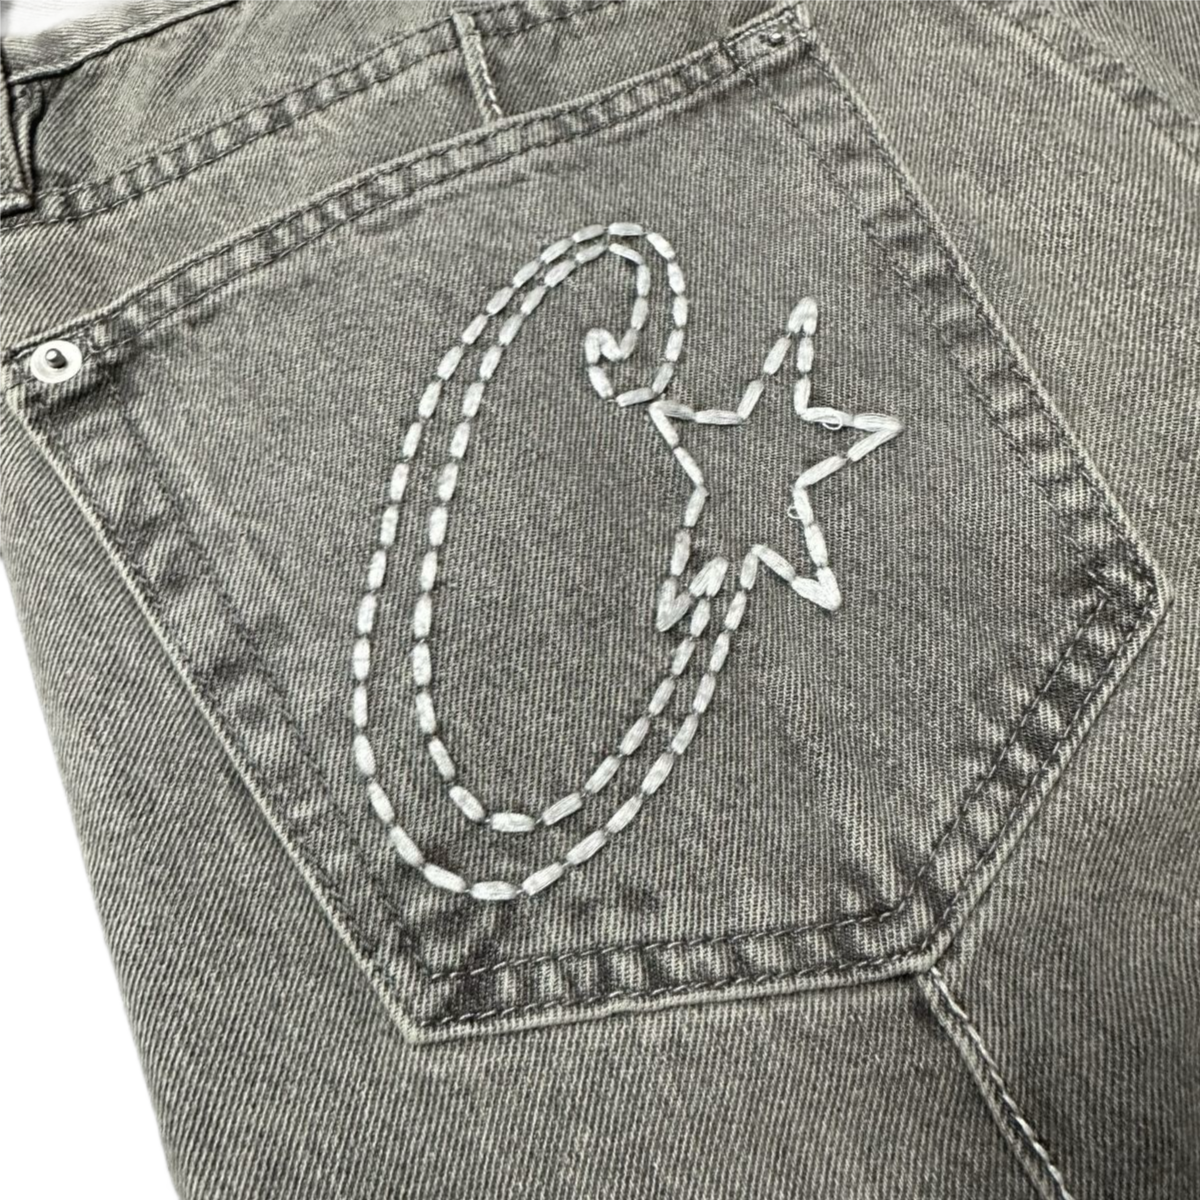 Corteiz C-Star Stitch-Down Denim Trucker Jacket Et Jeans Survêtements - Gris